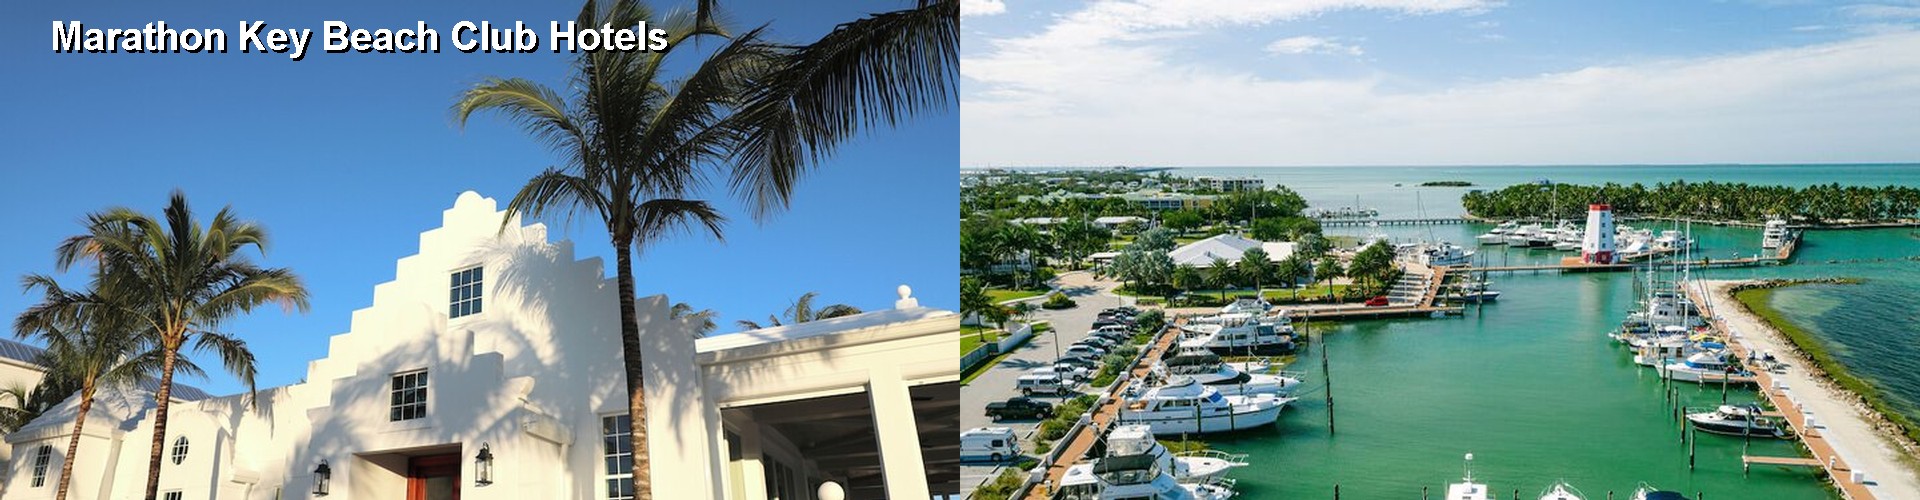 5 Best Hotels near Marathon Key Beach Club